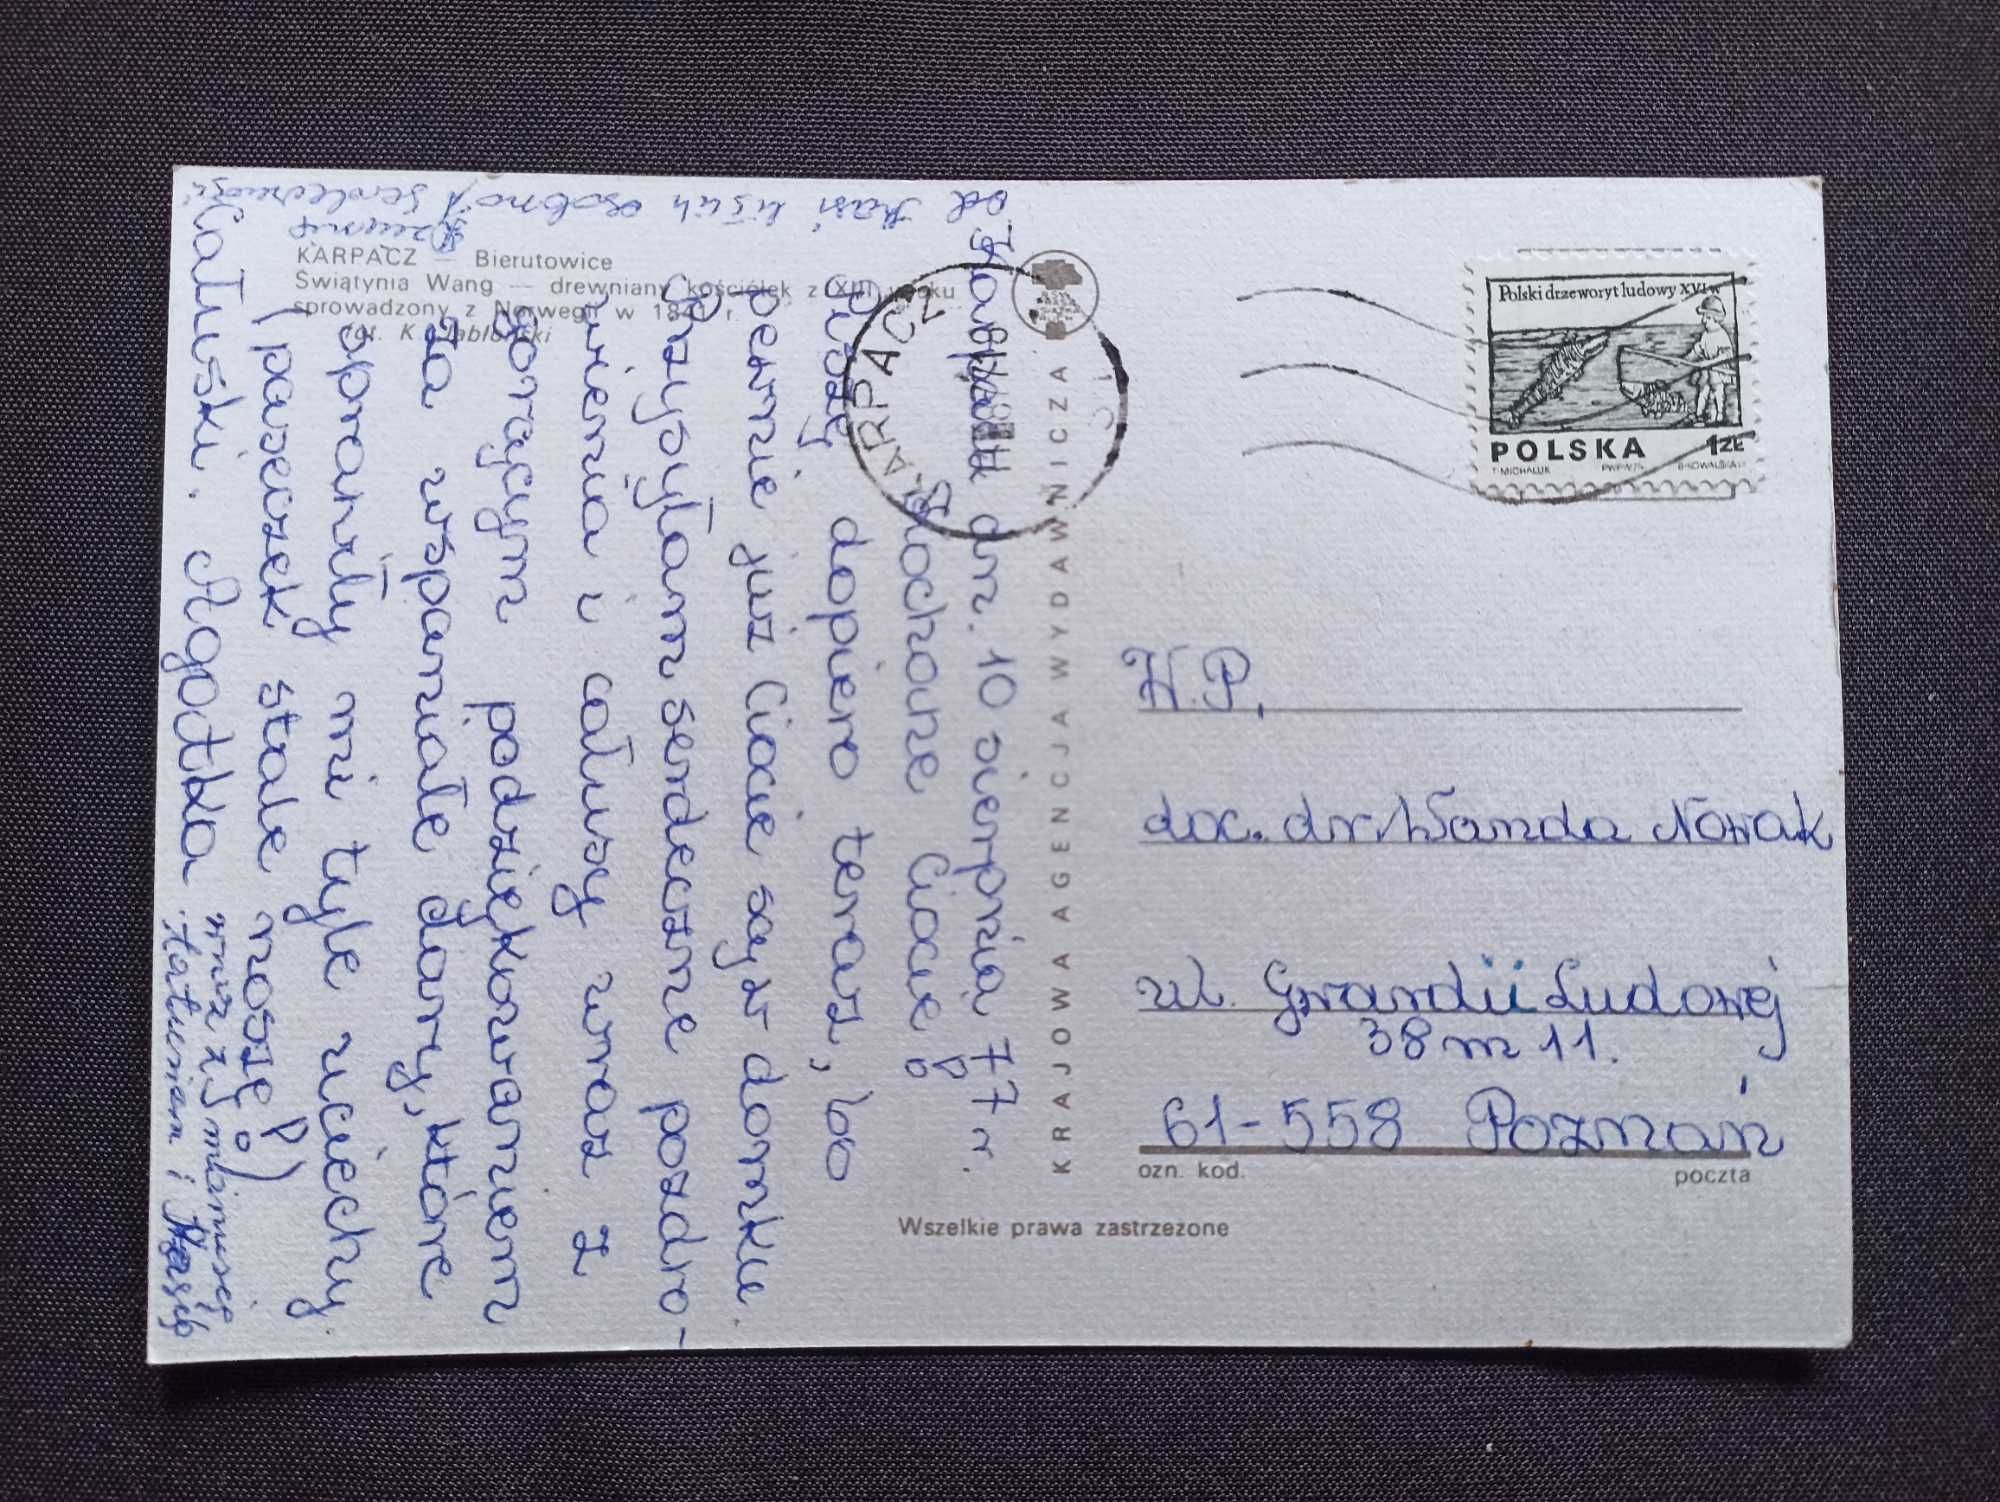 Pocztówka PRL 1977 Karpacz Świątynia Wang